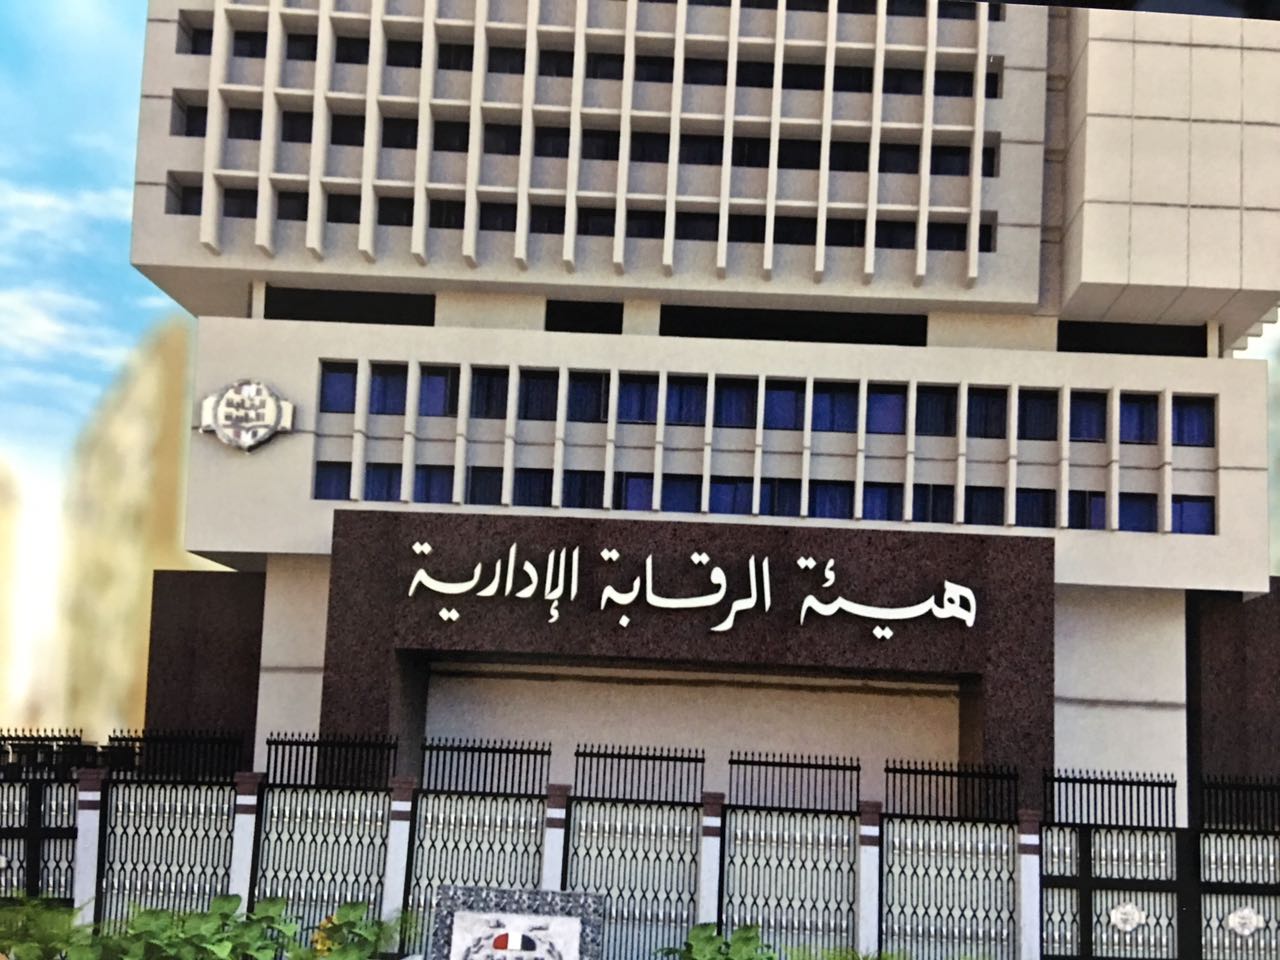   الرقابة الإدارية : ضبط موظفين بجمارك بورسعيد فى قضية فساد